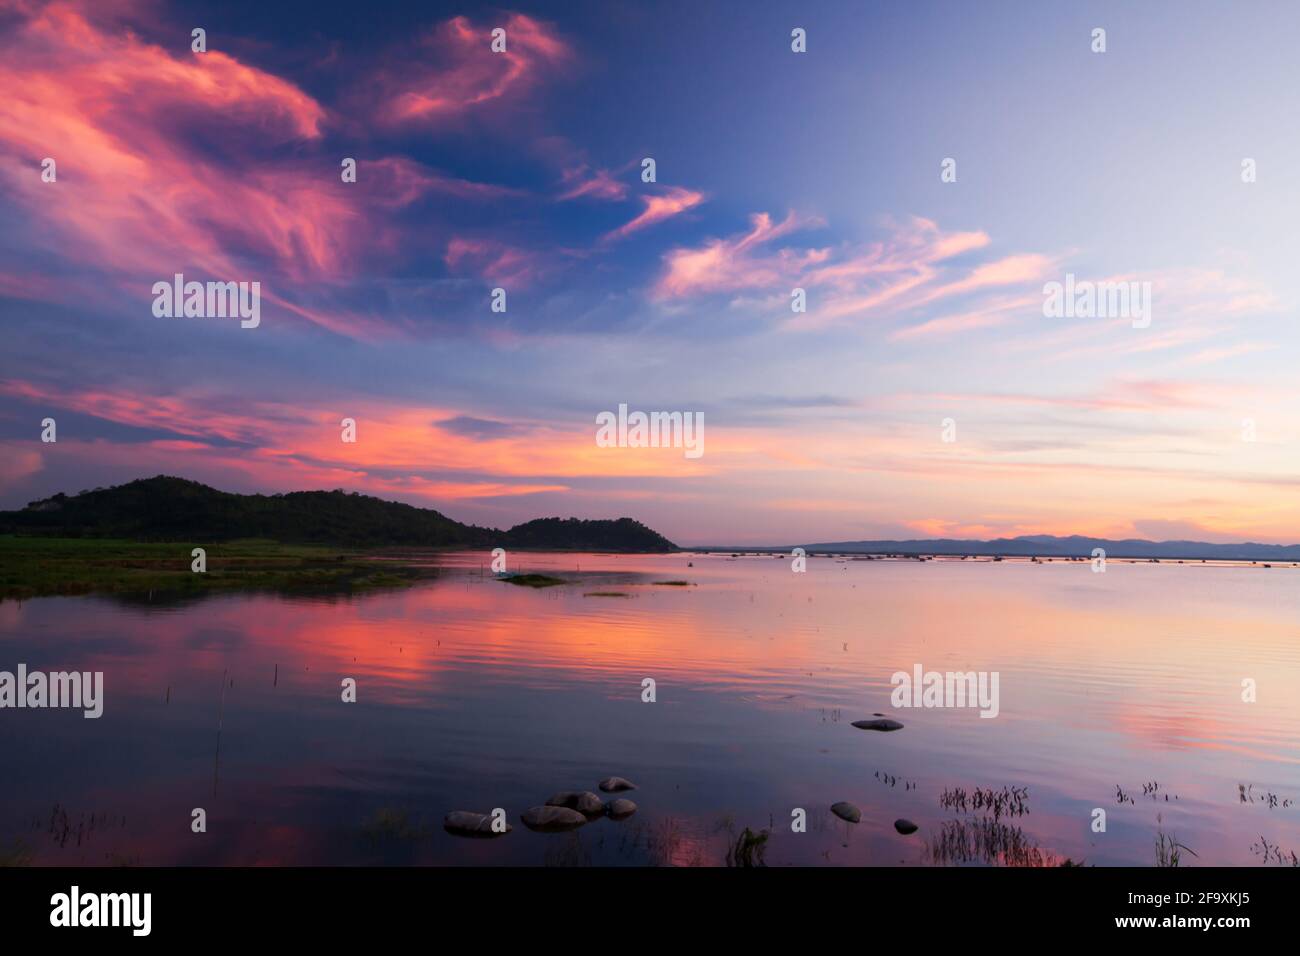 Dramatischer Sonnenuntergang Himmel über einem tropischen See. Wellen rosa Wolken und Sonnenuntergang Himmel Reflexion auf einem See. Westthailand. Stockfoto